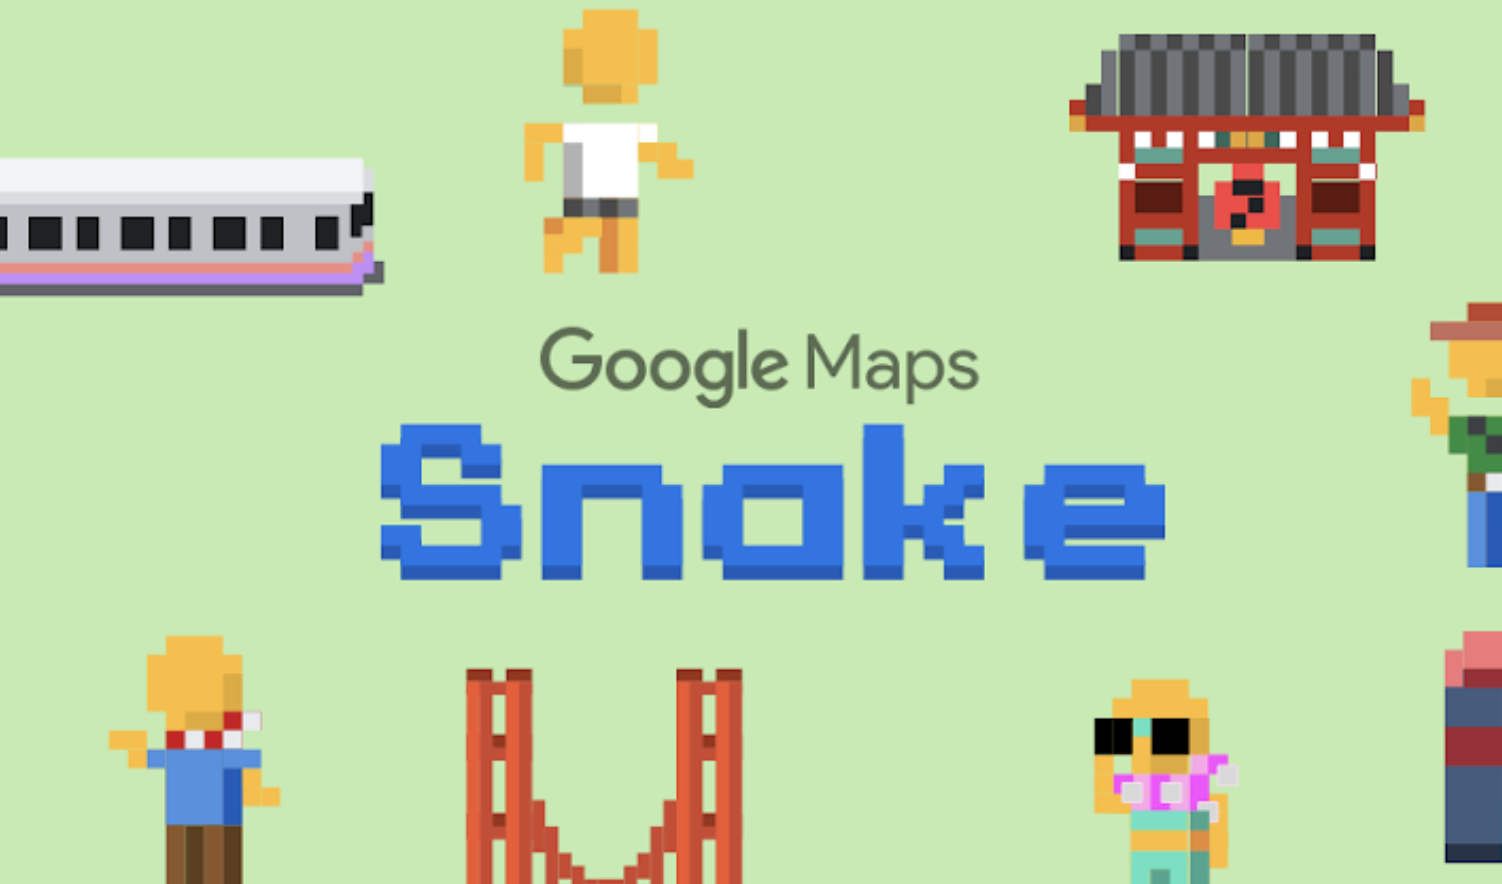 Gioco del serpente : snake io - App su Google Play